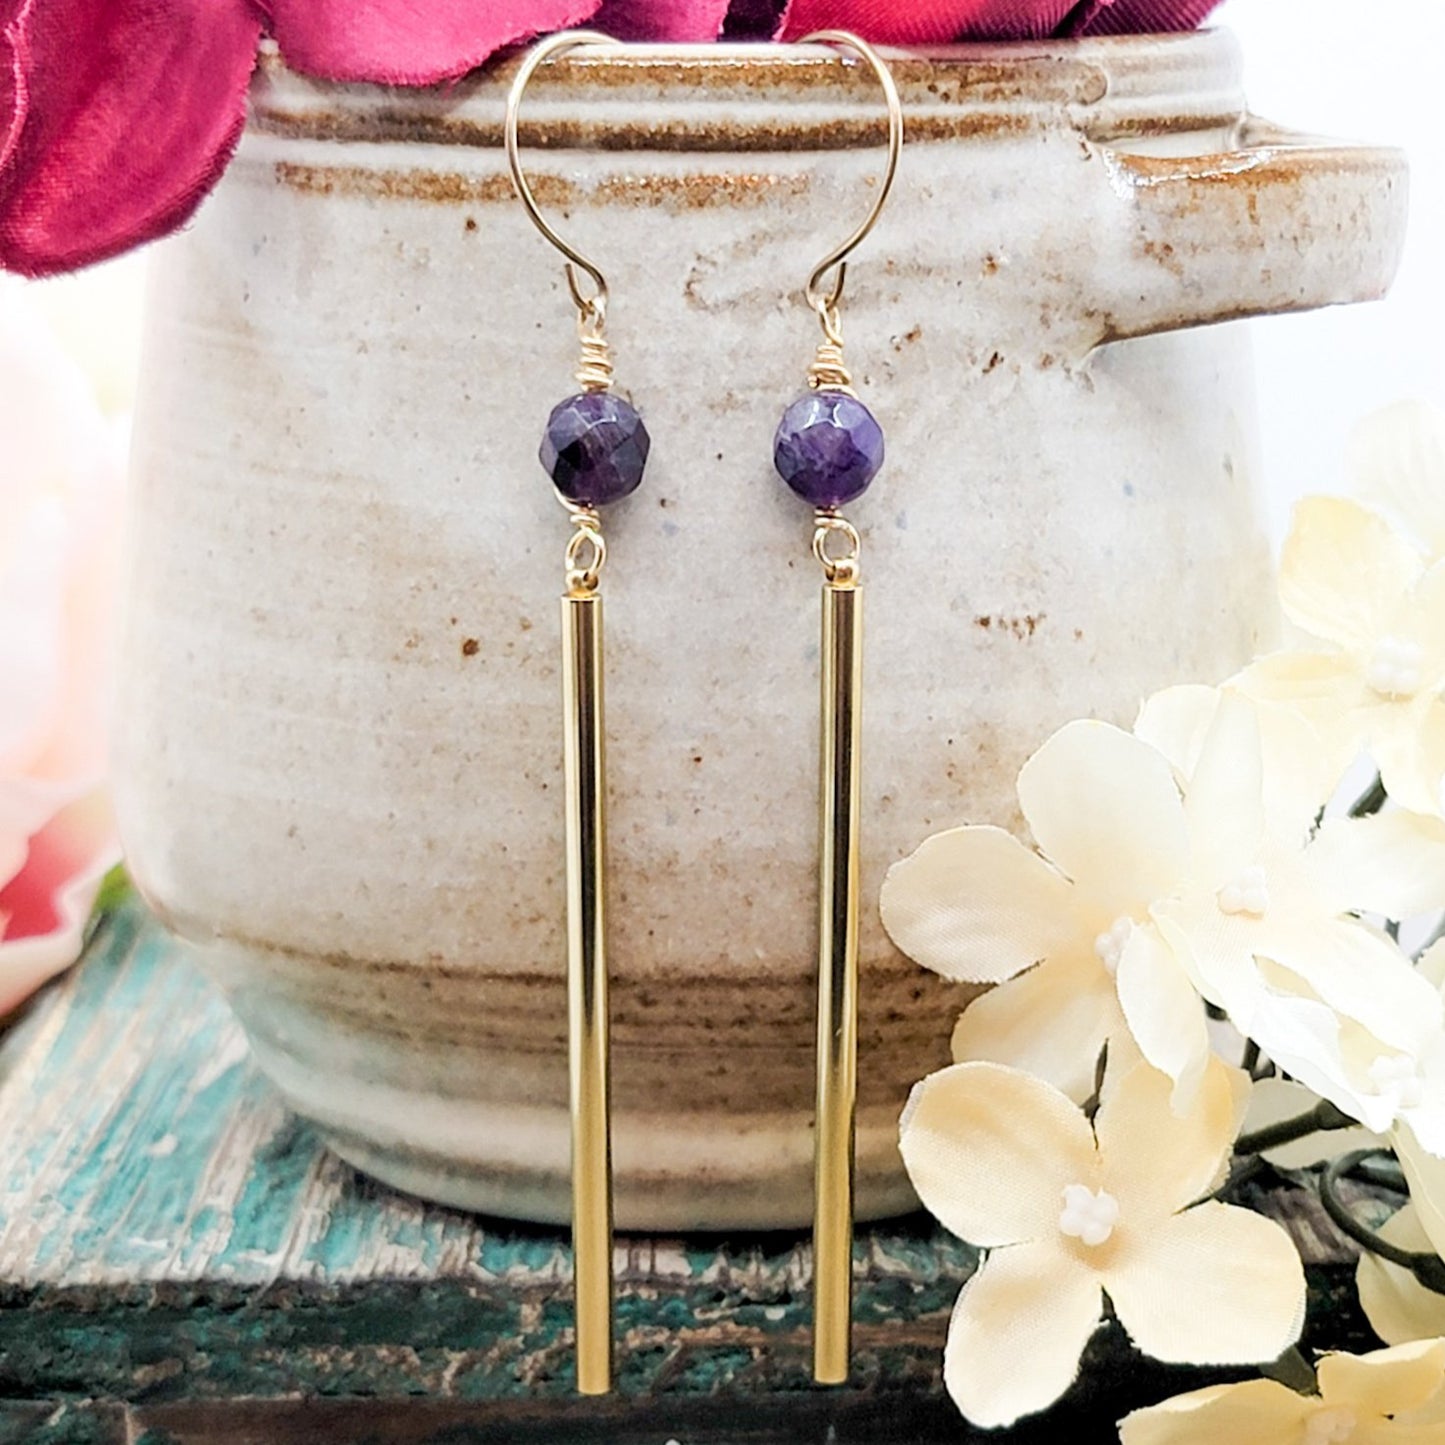 Brass Bar Earrings with Amethyst Stones - Nicki Lynn Jewelry